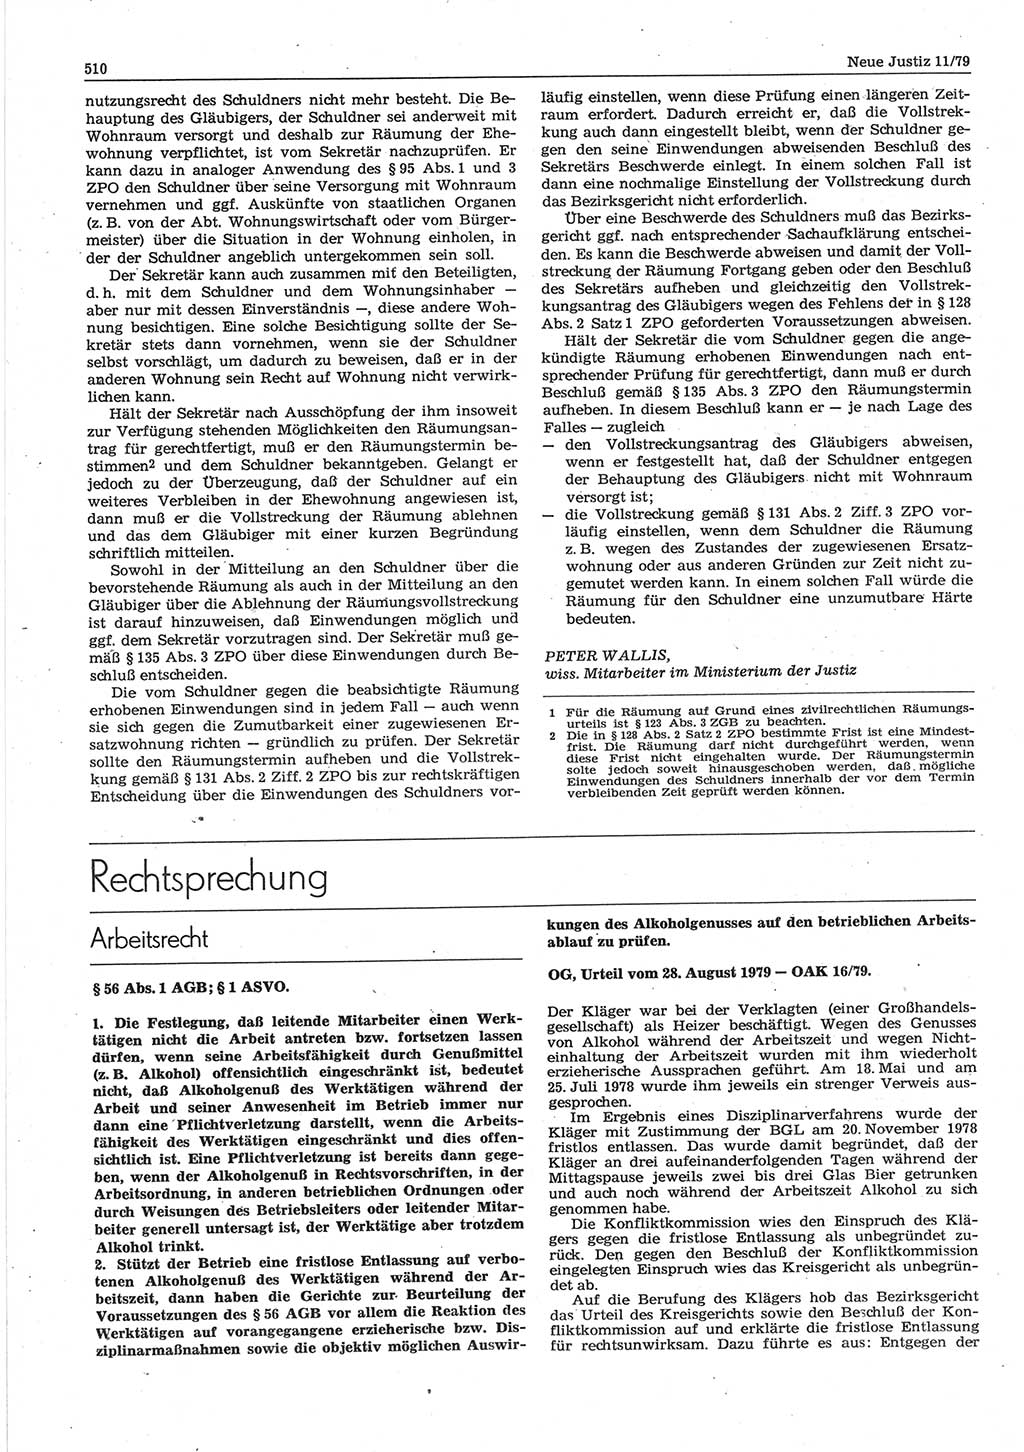 Neue Justiz (NJ), Zeitschrift für sozialistisches Recht und Gesetzlichkeit [Deutsche Demokratische Republik (DDR)], 33. Jahrgang 1979, Seite 510 (NJ DDR 1979, S. 510)